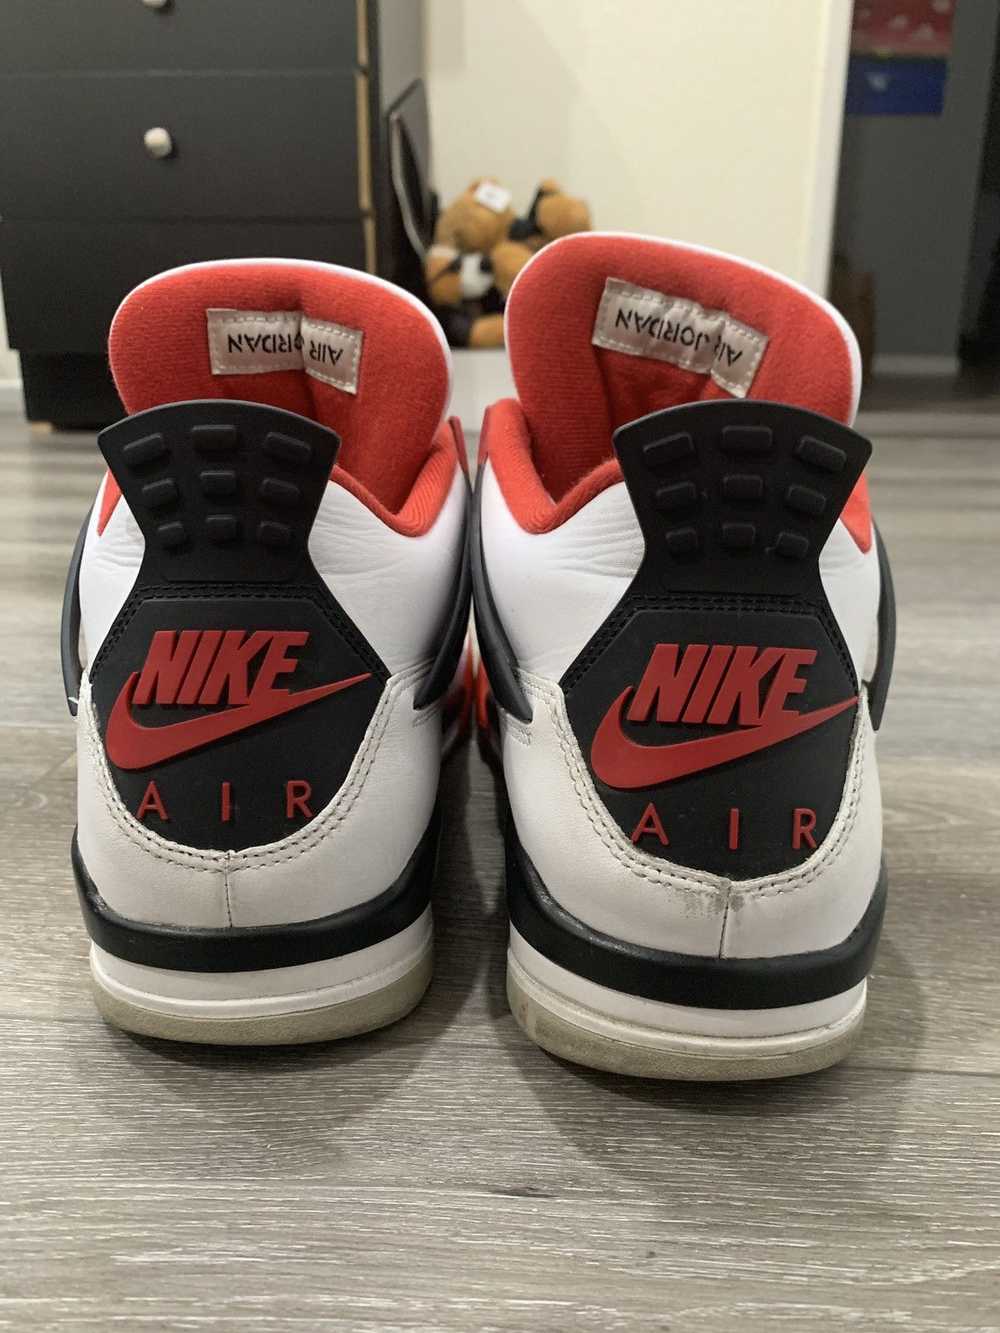 Jordan Brand × Nike Air Jordan 4 Fire Red 10.5 - image 4